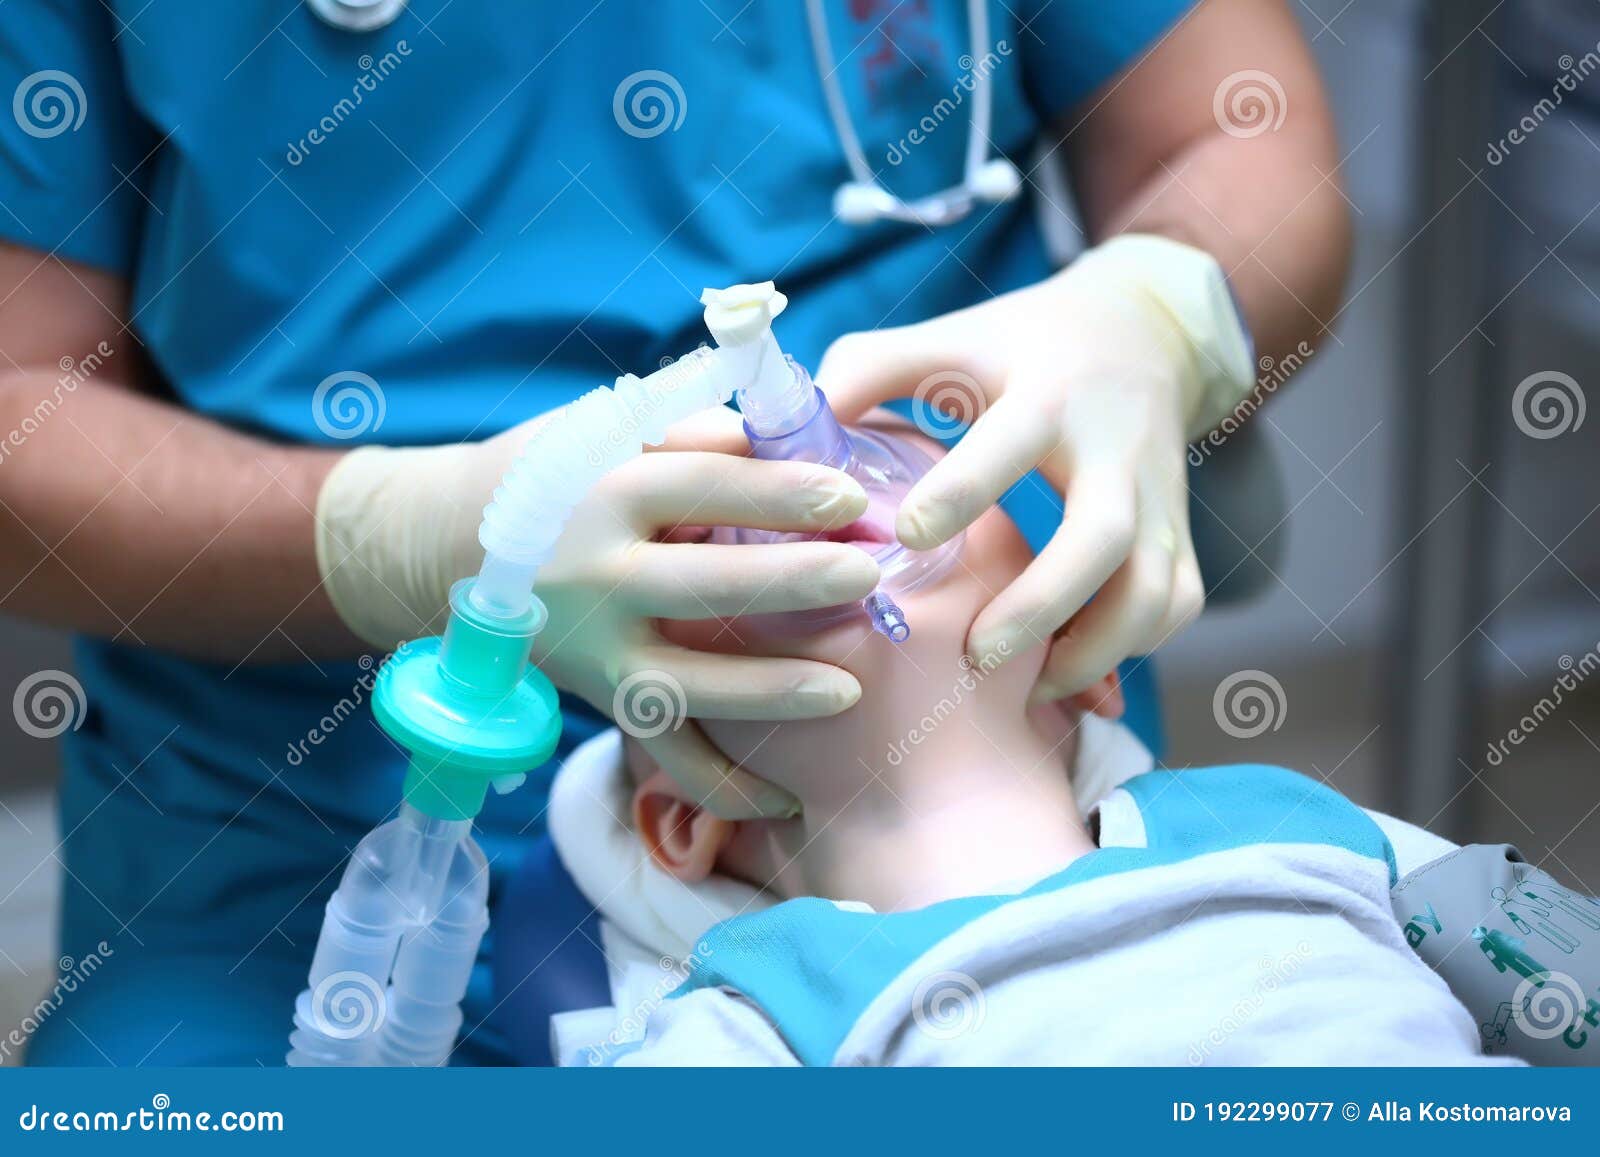 Наркоз ребенку в год. Общий наркоз через маску. Стоматологическая операция у ребенка.